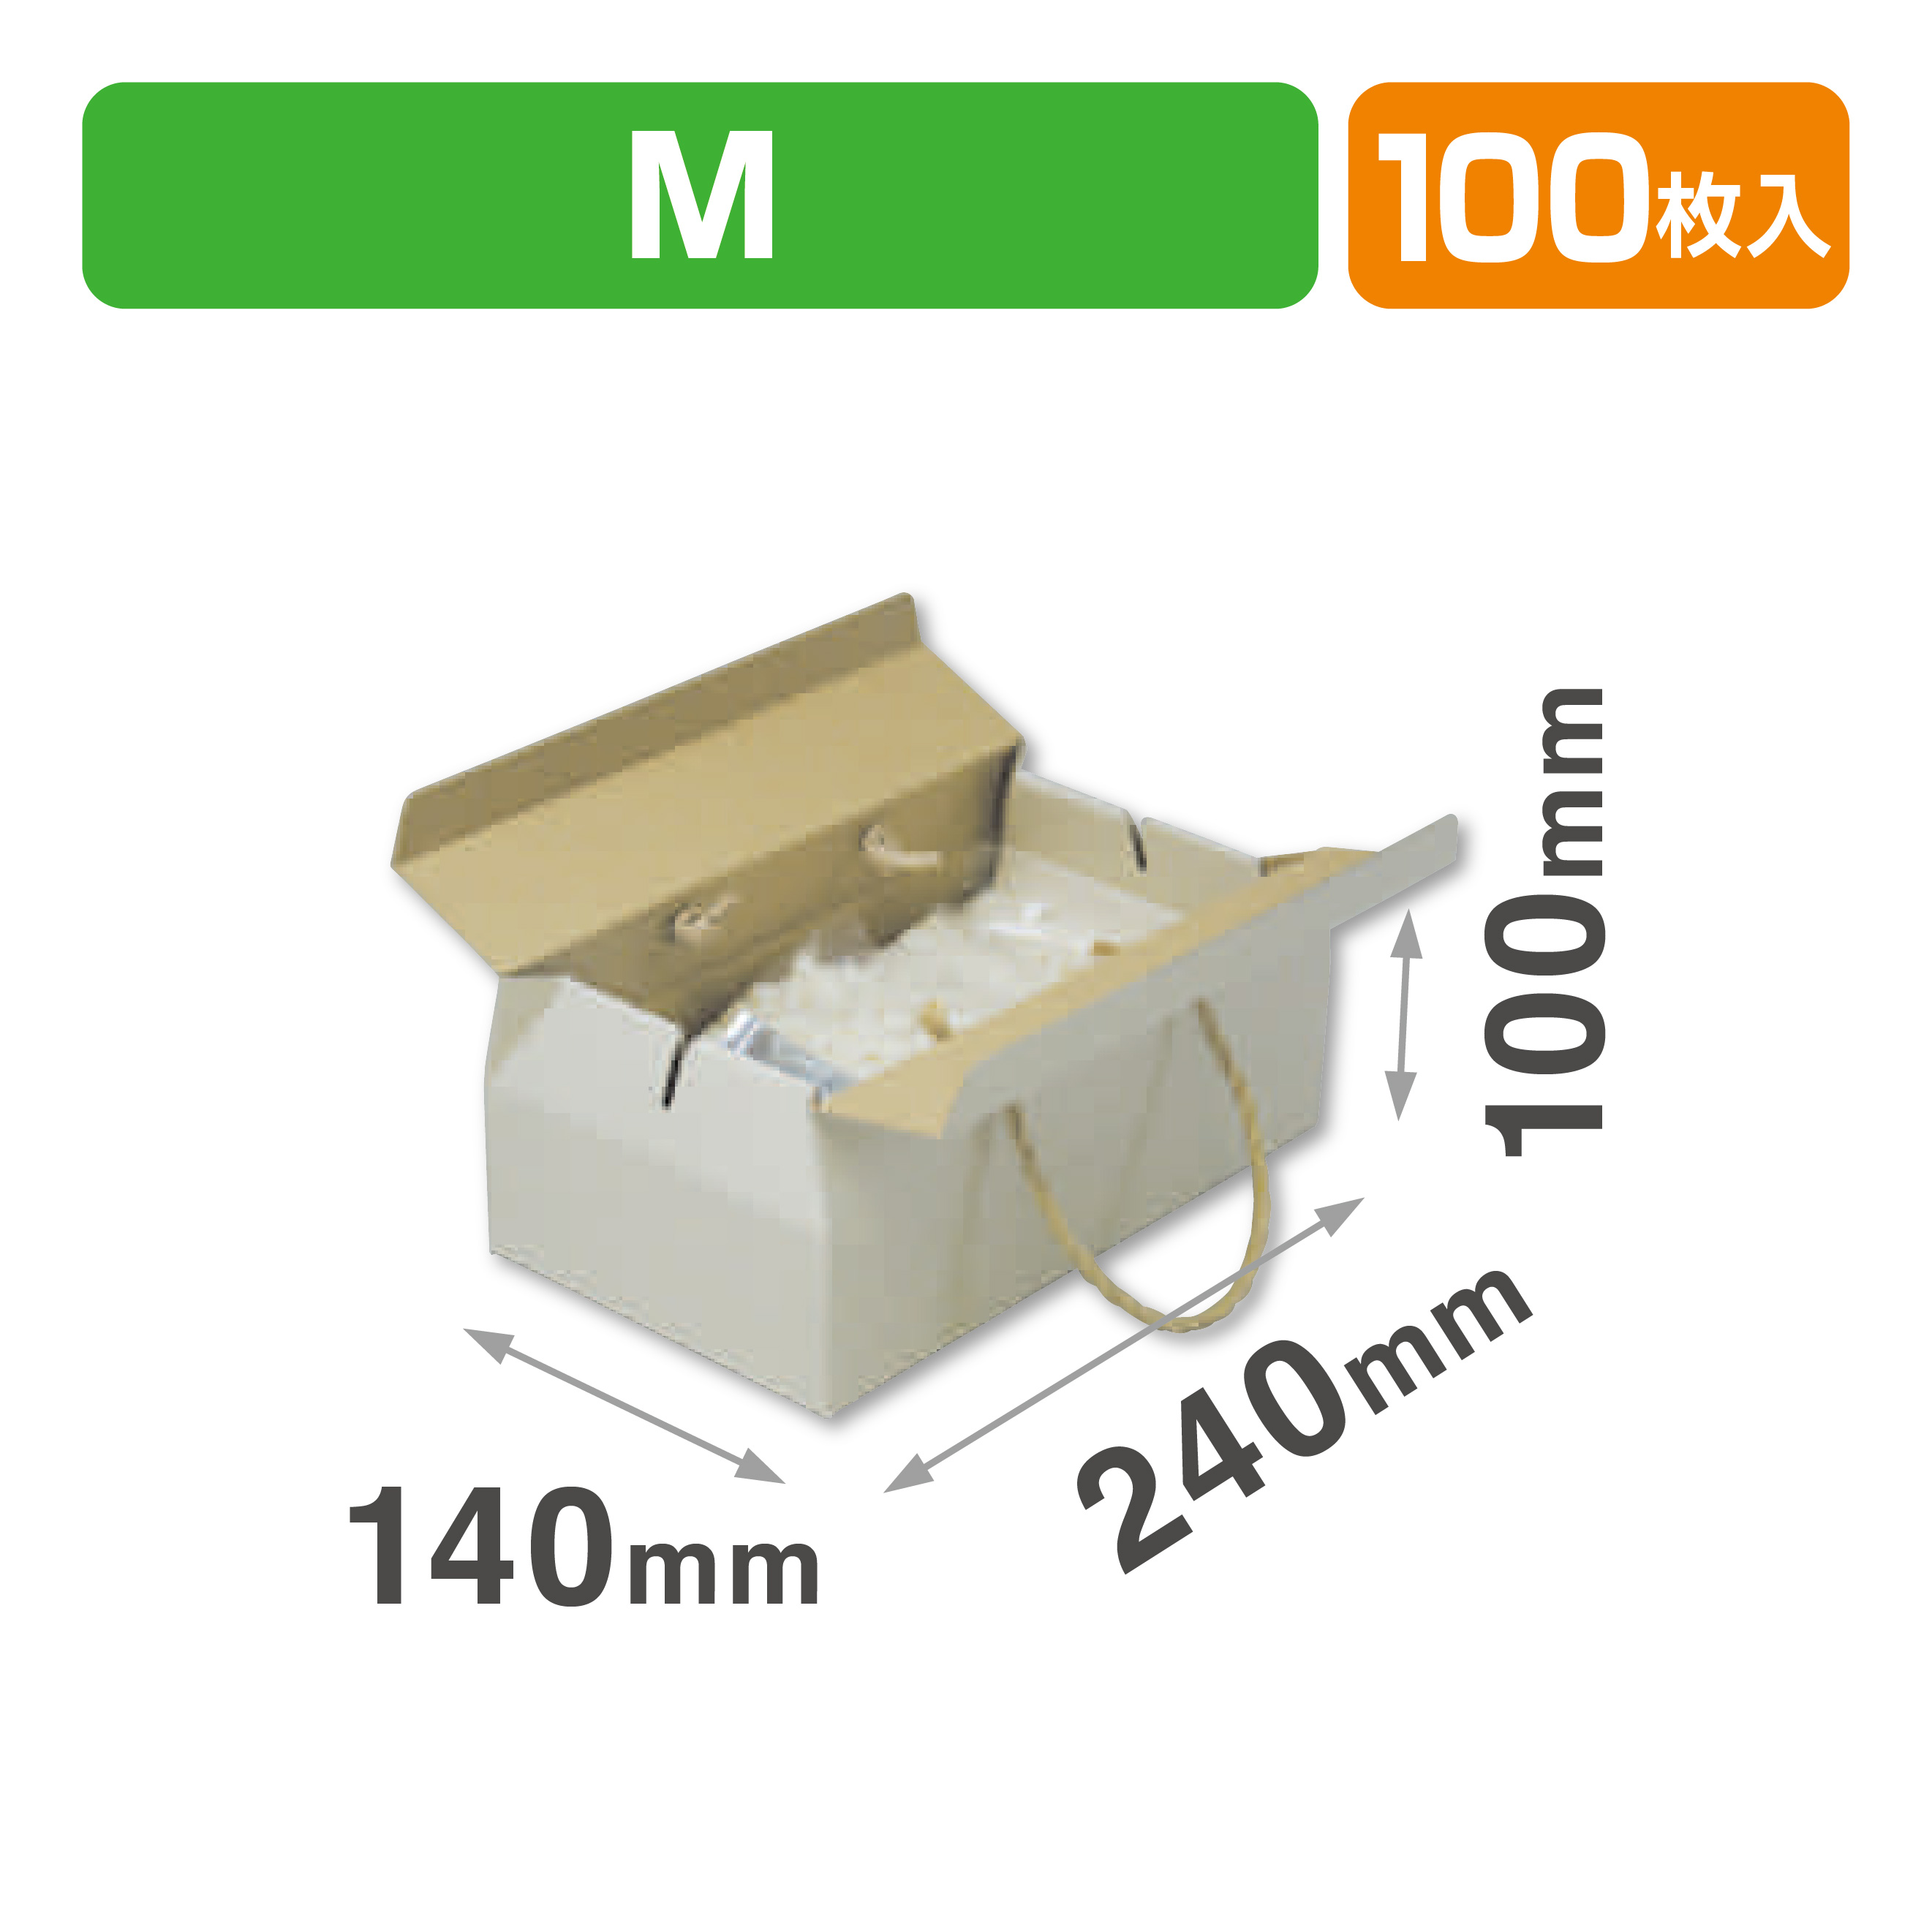 ナチュラル手提BOX-M商品画像1